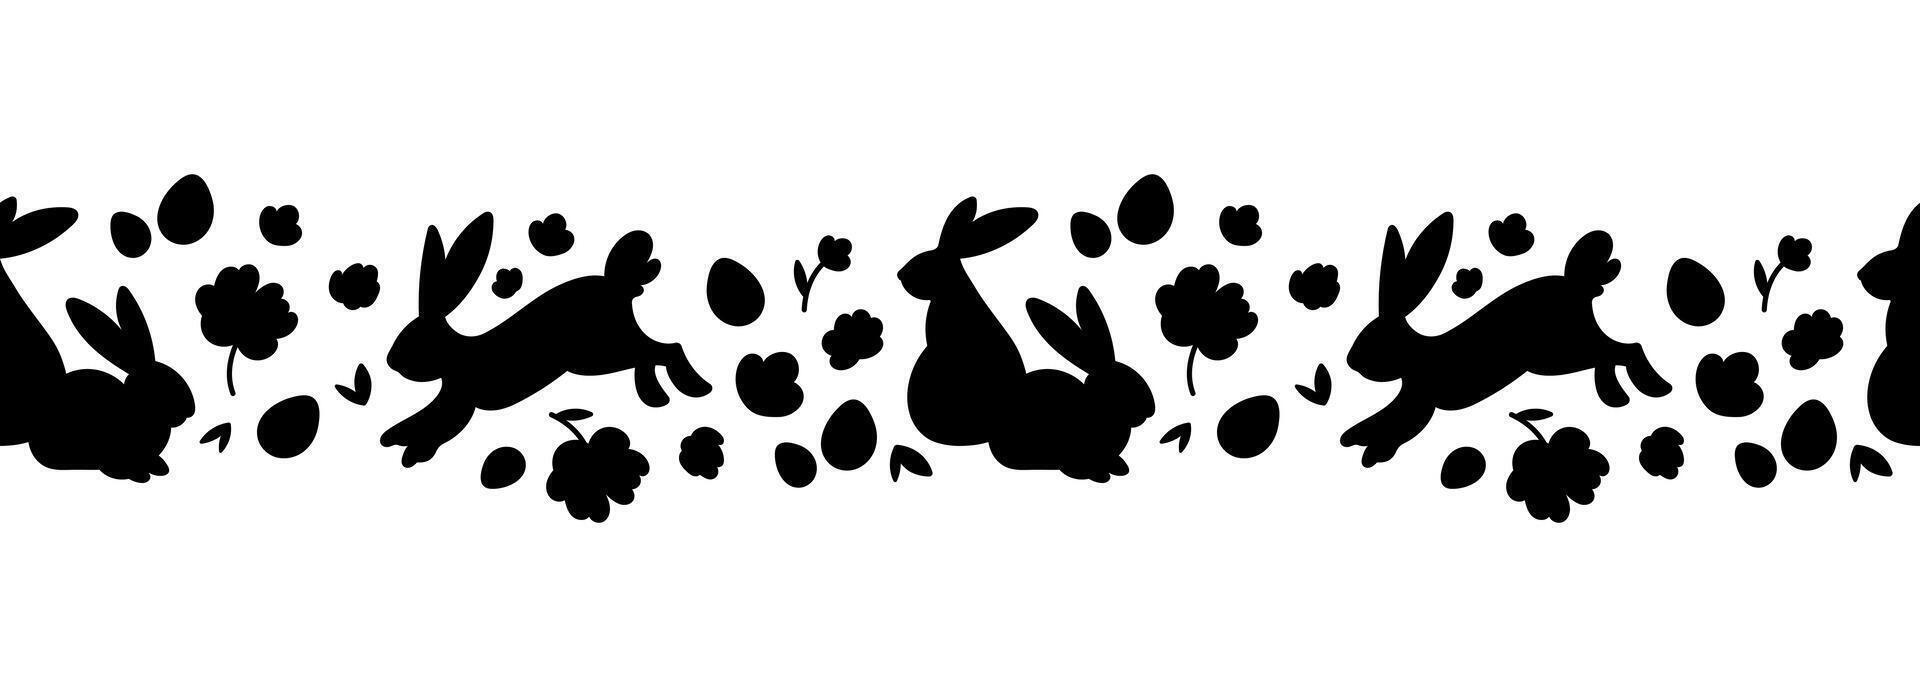 härlig handgjort påsk horisontell sömlös mönster. söt doodles. silhuetter av kaniner, blommor, påsk ägg. lämplig för textilier, banderoller, tapeter, förpackning - vektor design